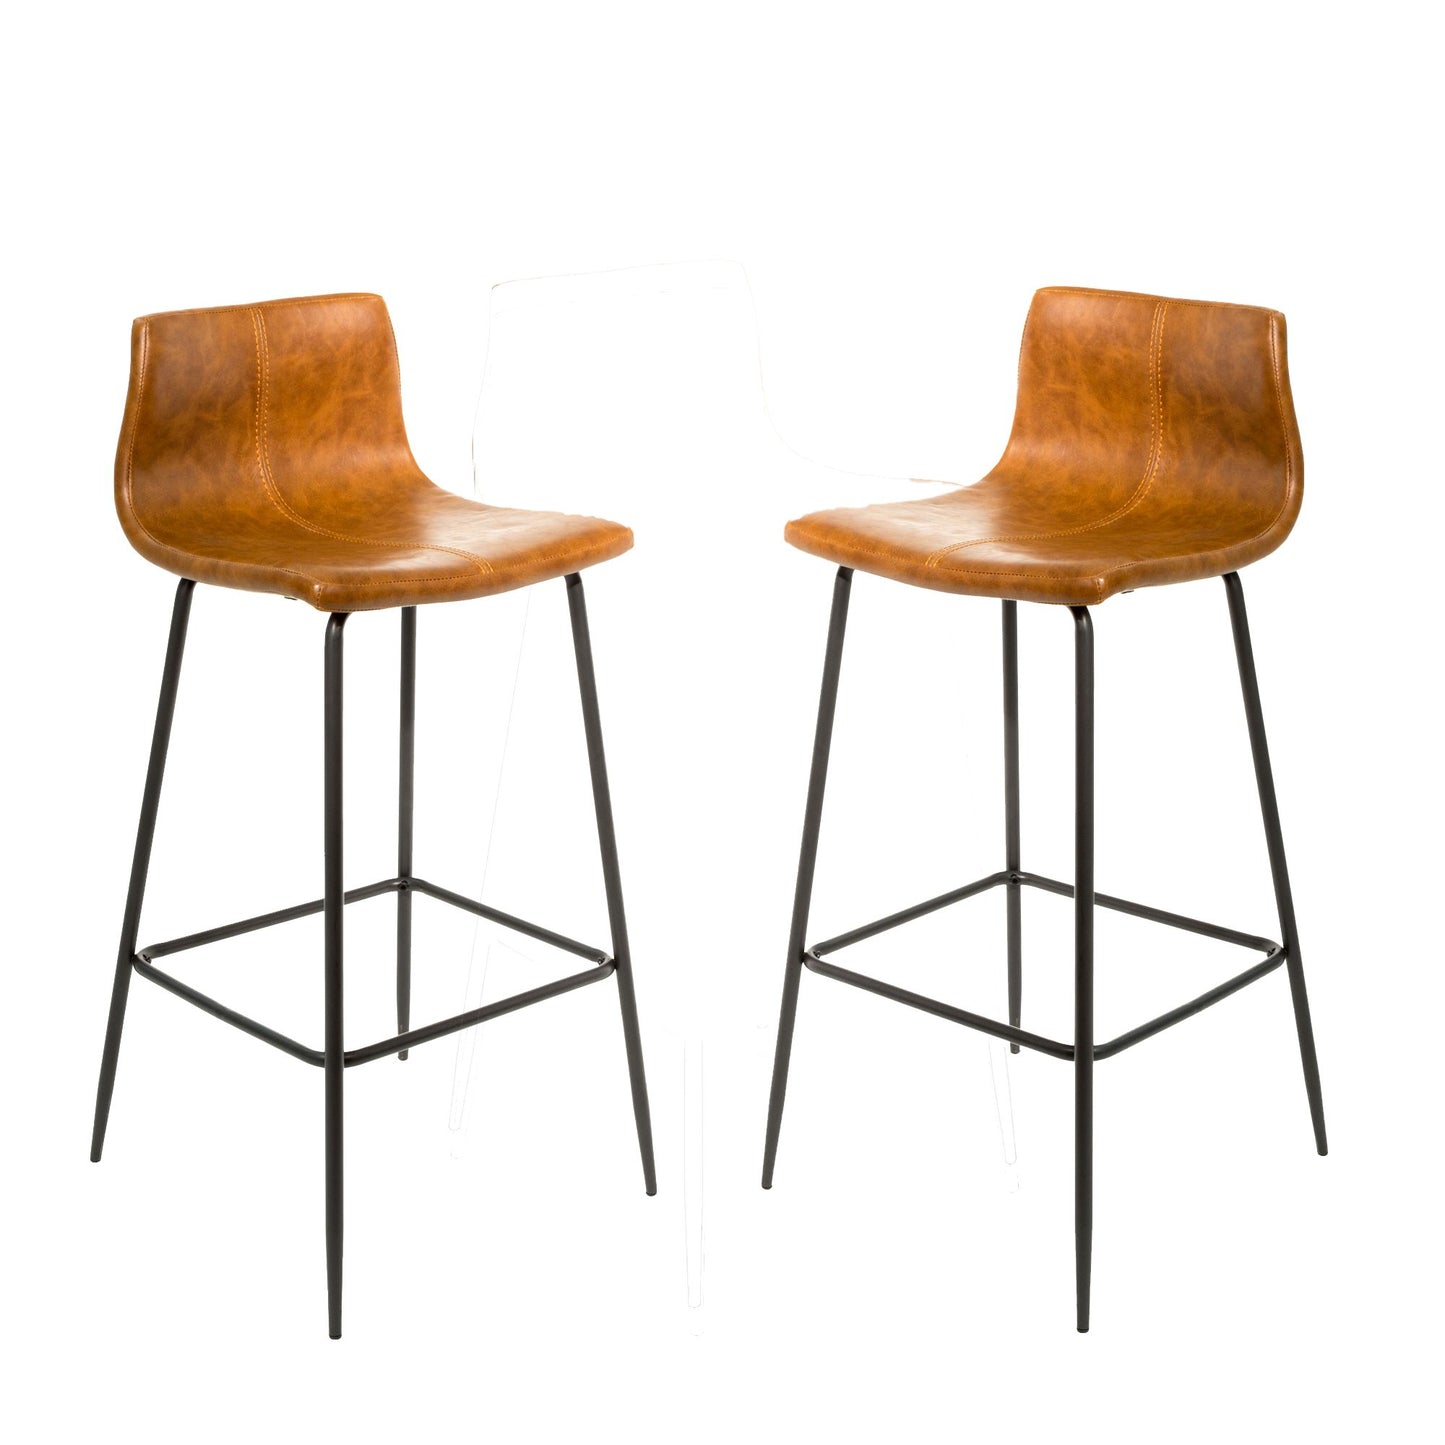 Pair of Barracuda tan bar stools